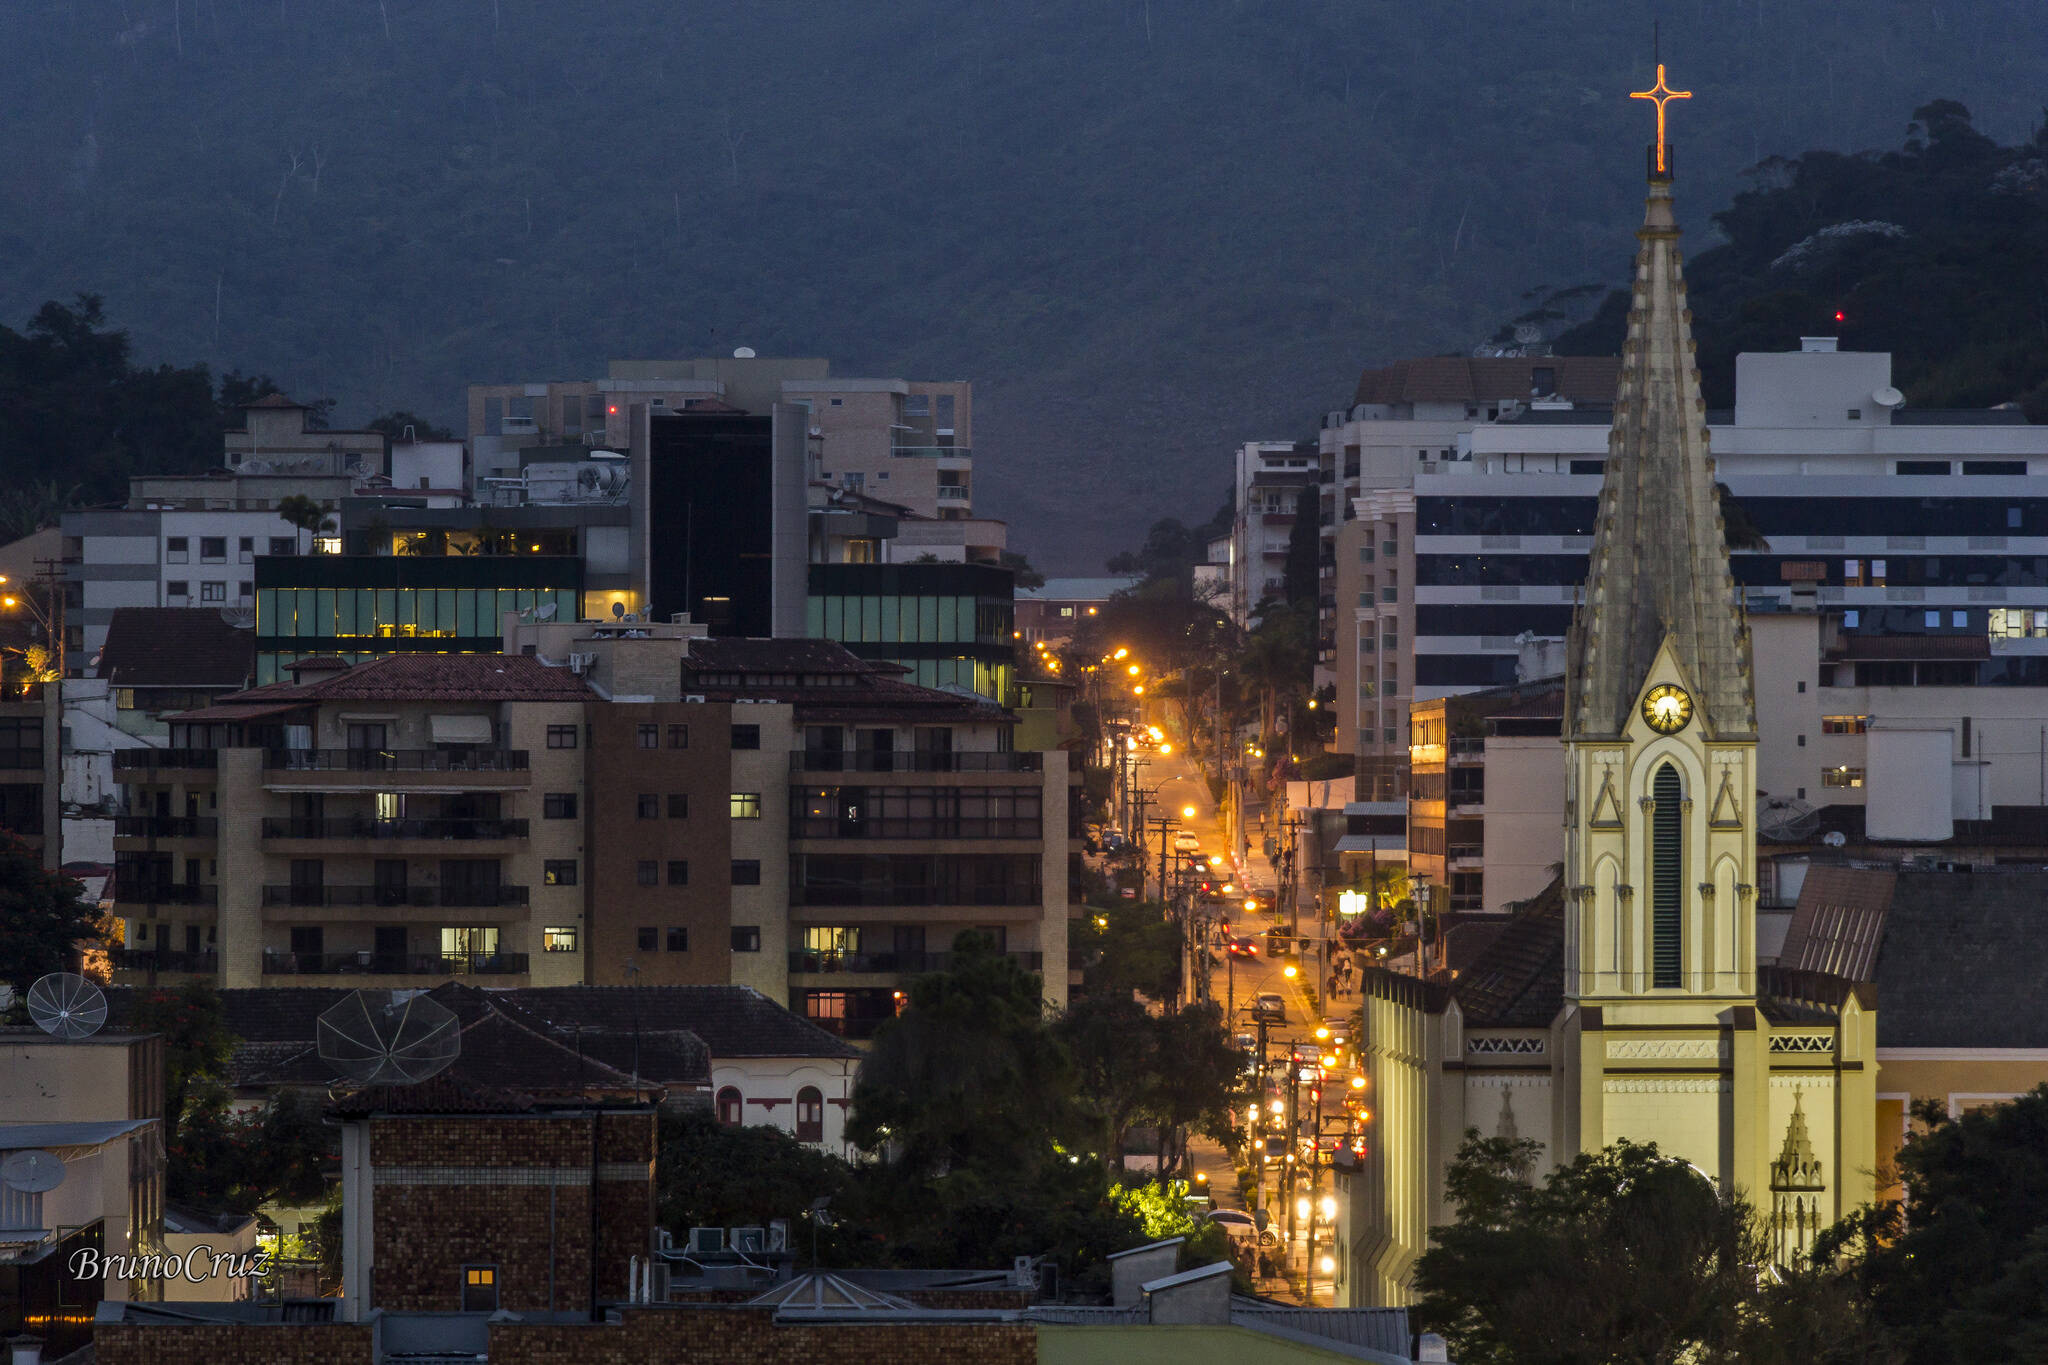 À noite, a Igreja Matriz de Santa Teresa D'Avila fica ainda mais bonita em meio à cidade. Foto: Reprodução/Flickr/Bruno Cruz